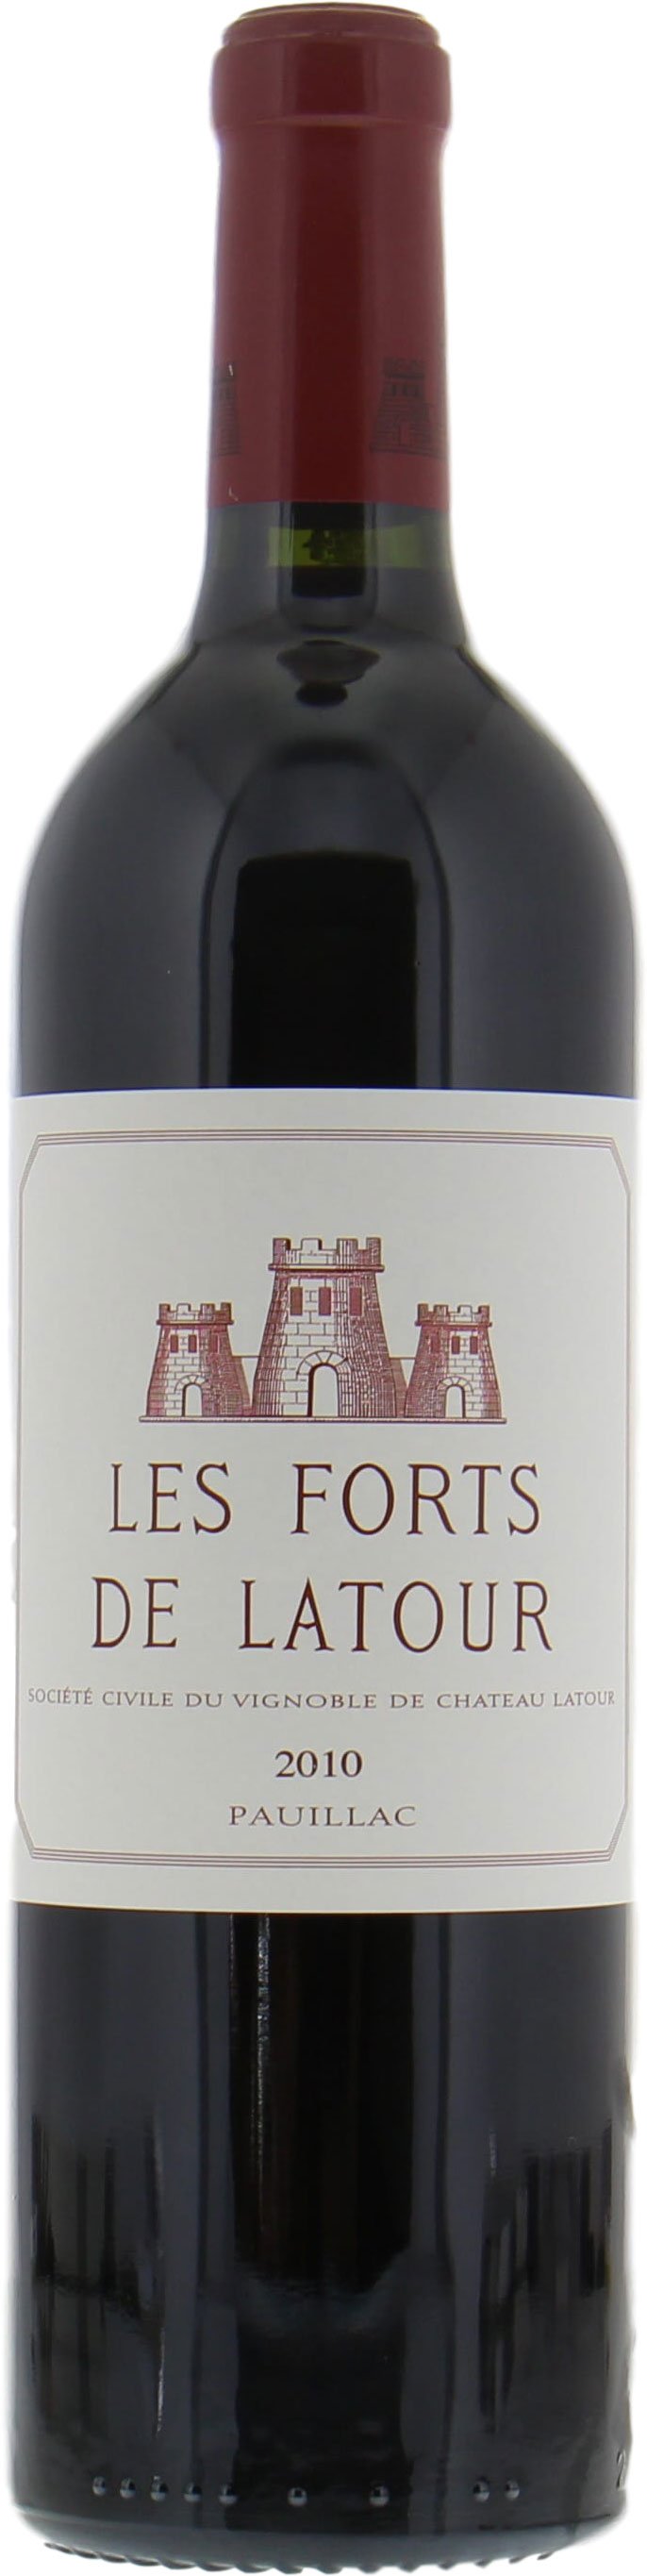 Chateau Latour - Les Forts de Latour 2010 From Original Wooden Case